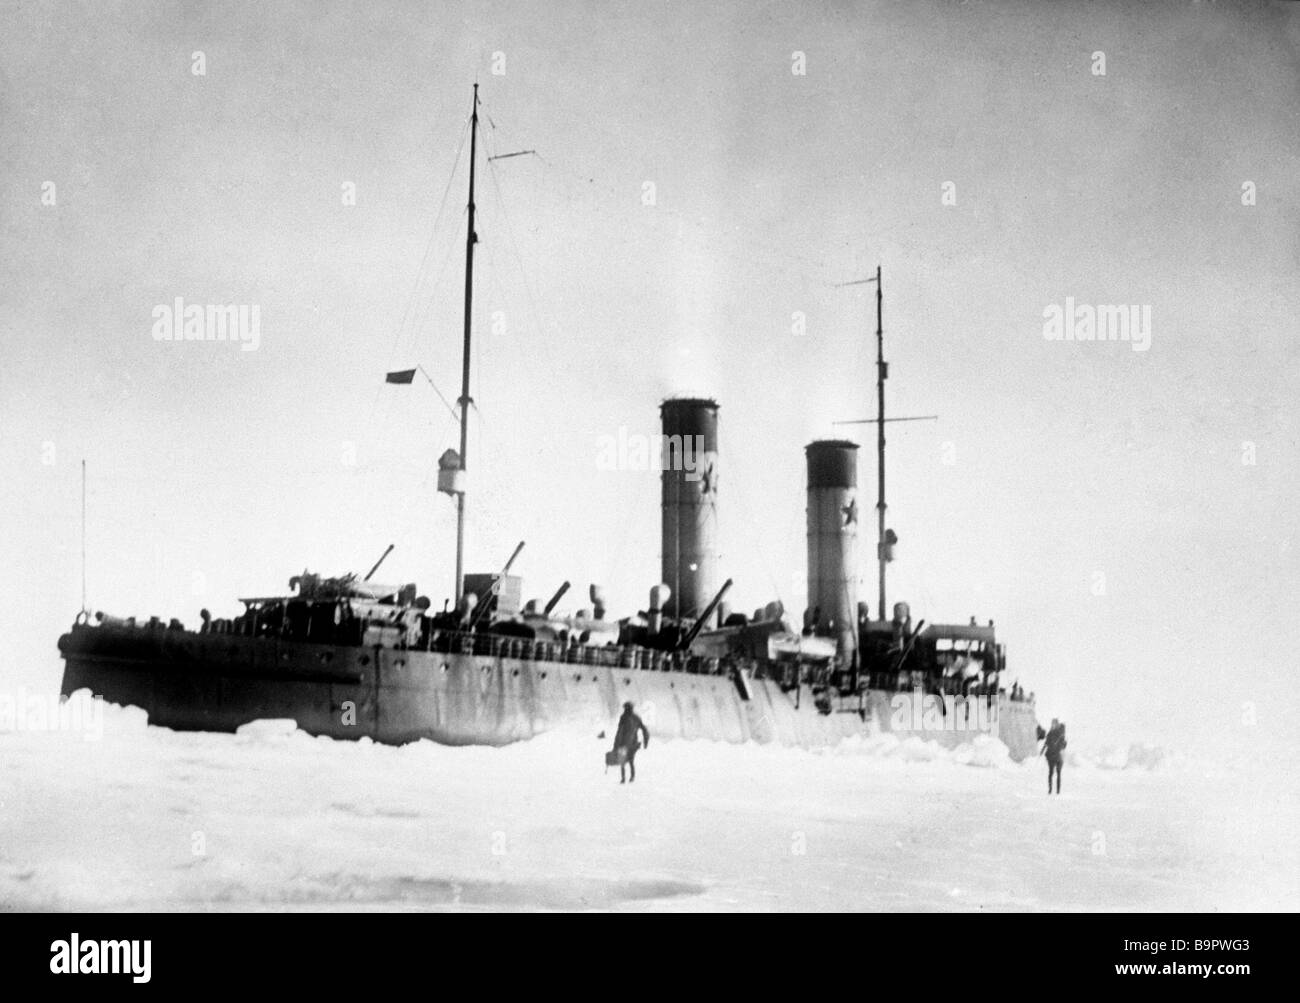 В 1928 ледокол спас итальянскую экспедицию. Ледокол Красин 1928. Красин ледокол спасение Нобиле. Ледокол Красин во льдах. Спасение экспедиции Умберто Нобиле.